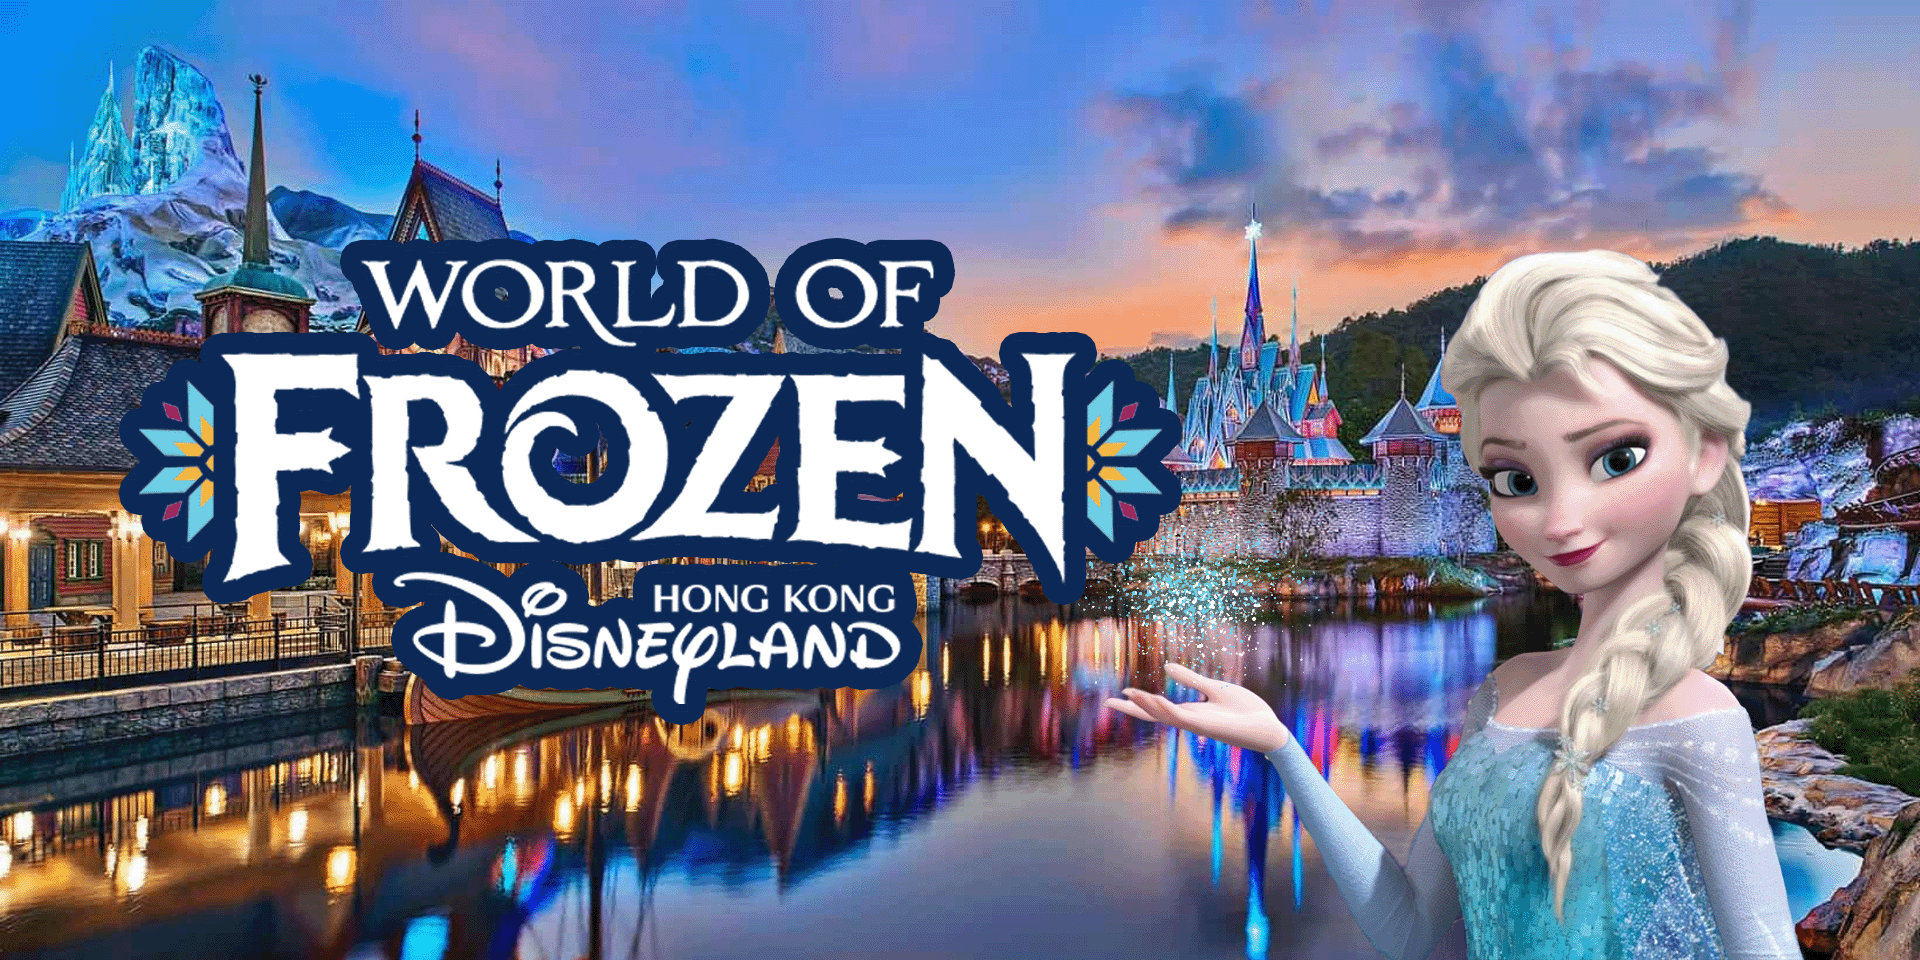  ฉลองครบรอบ 15 ปี Hongkong Disneyland เปิดโซนใหม่ “World of Frozen” 20 พ.ย. 66 นี้